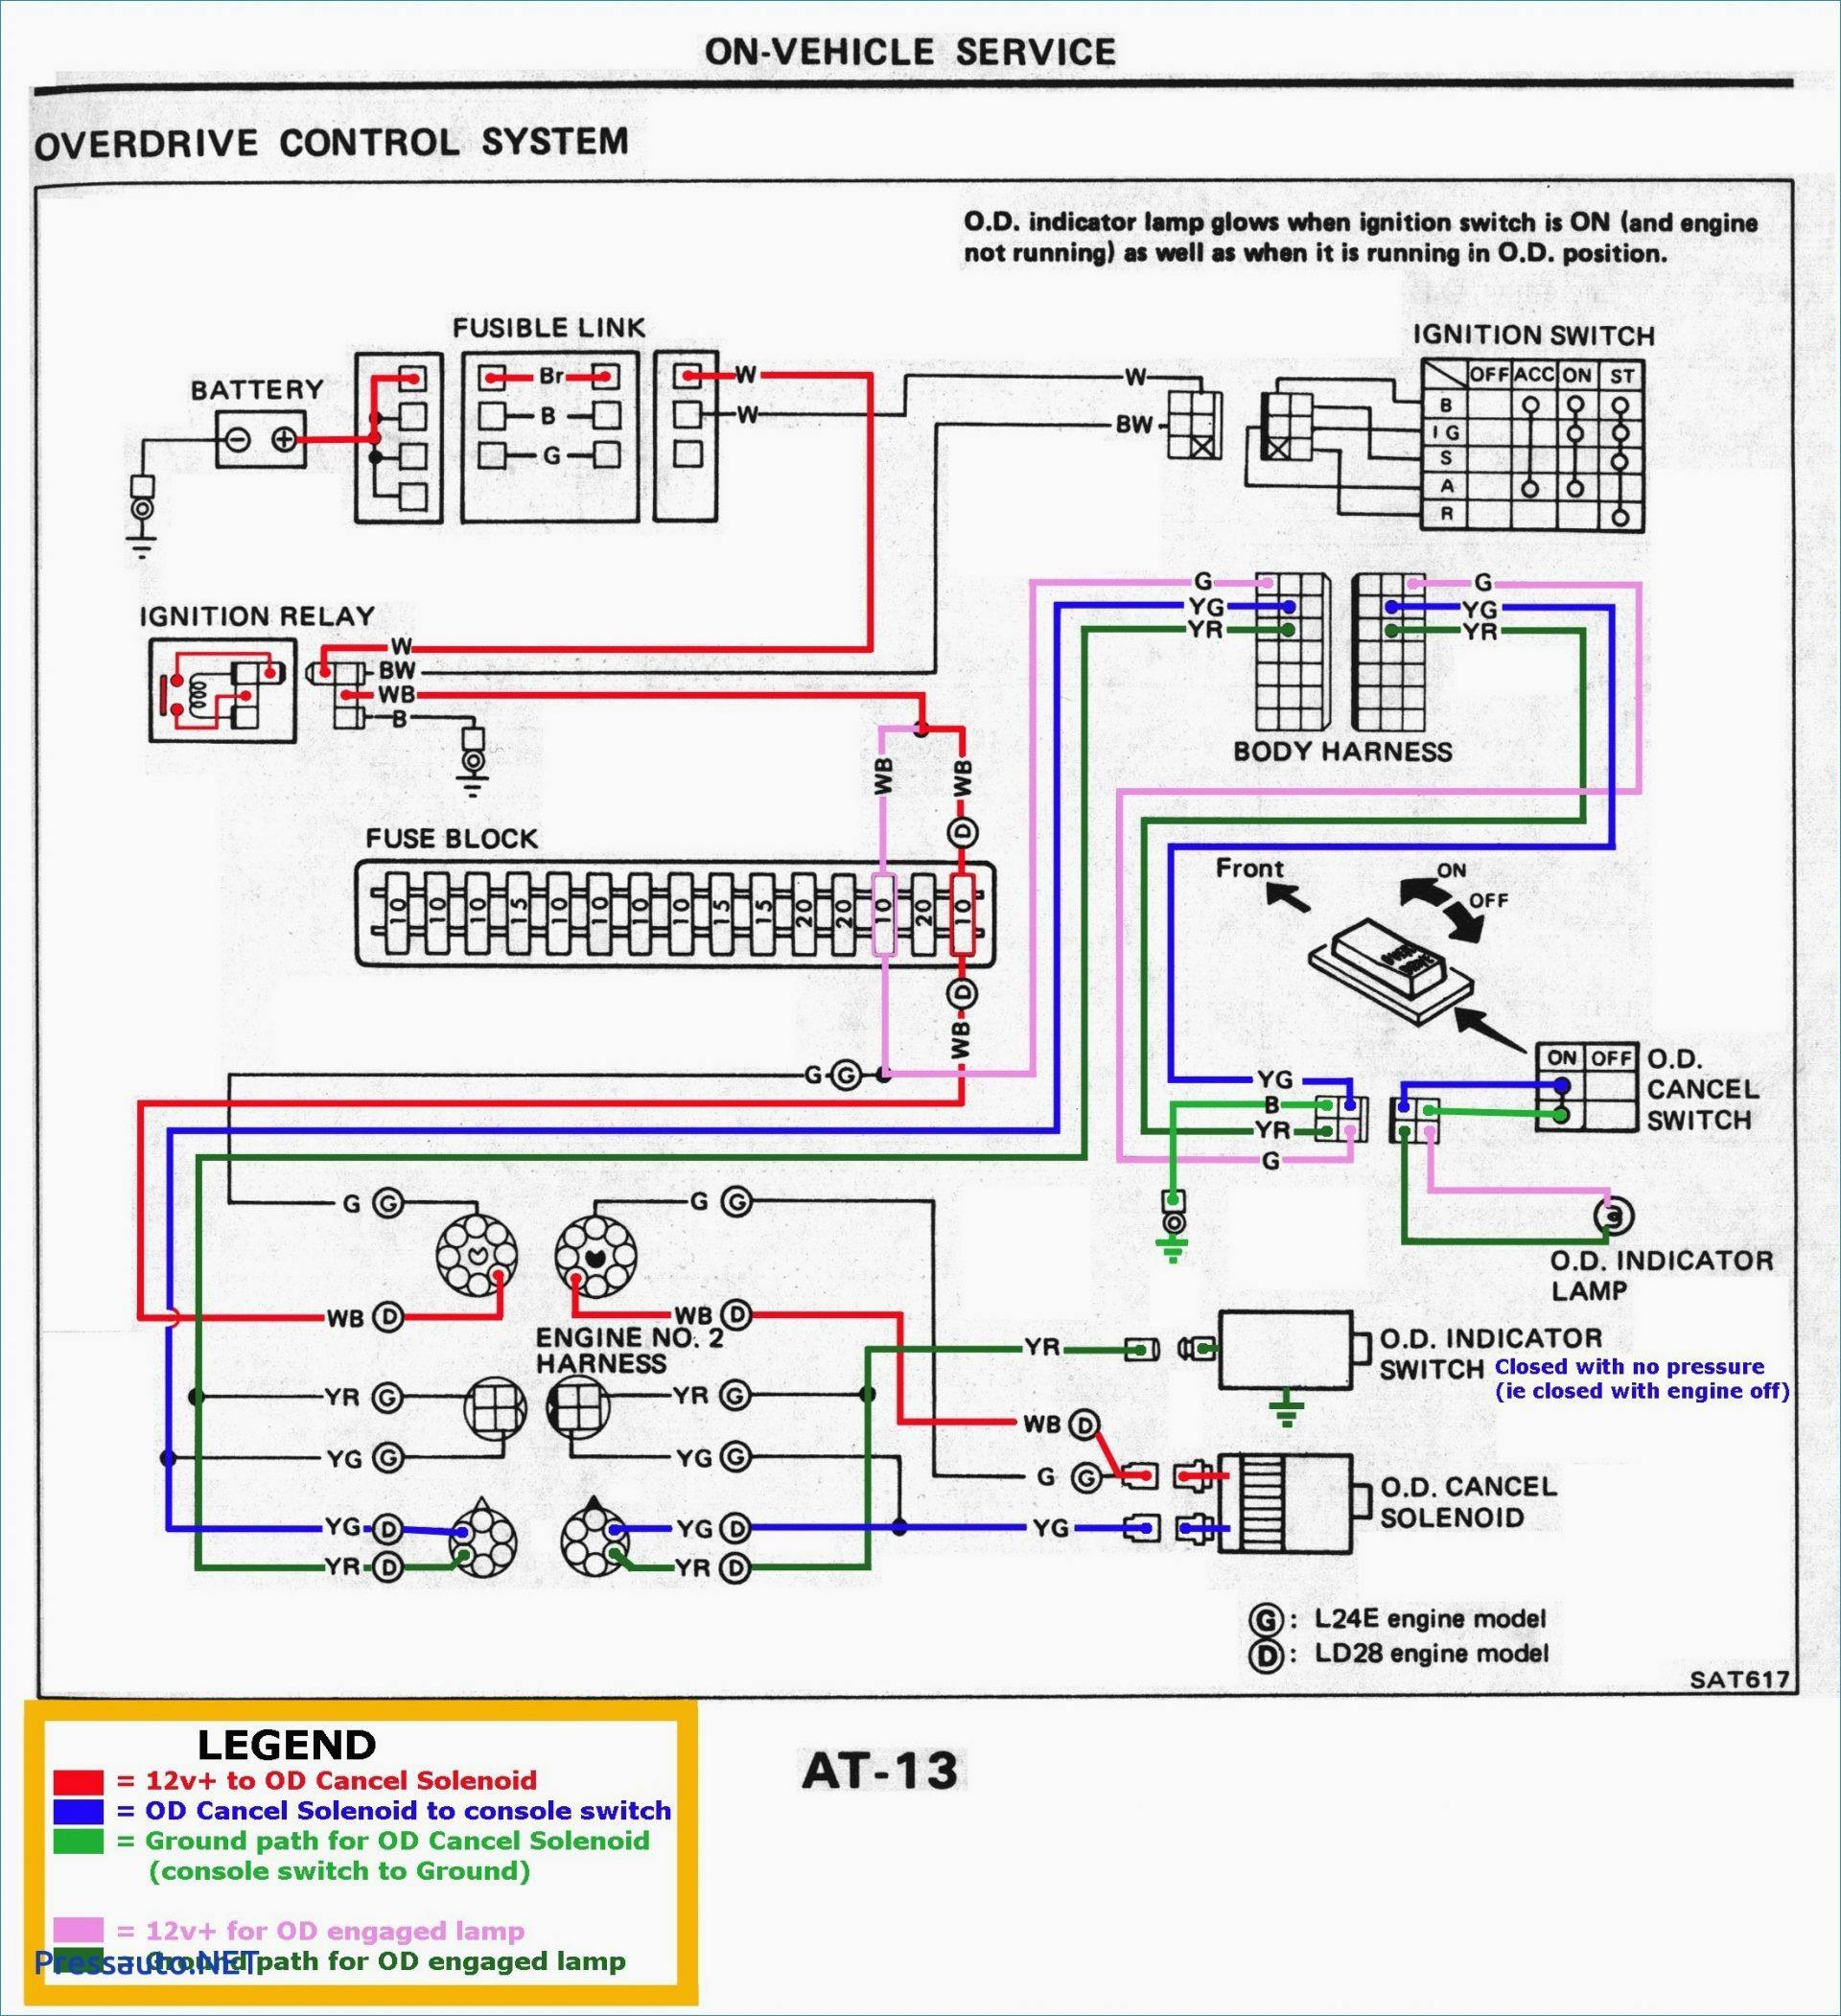 2004 Silverado Wiring Diagram - Wiring Diagrams Thumbs - 2004 Chevy Silverado Trailer Wiring Diagram